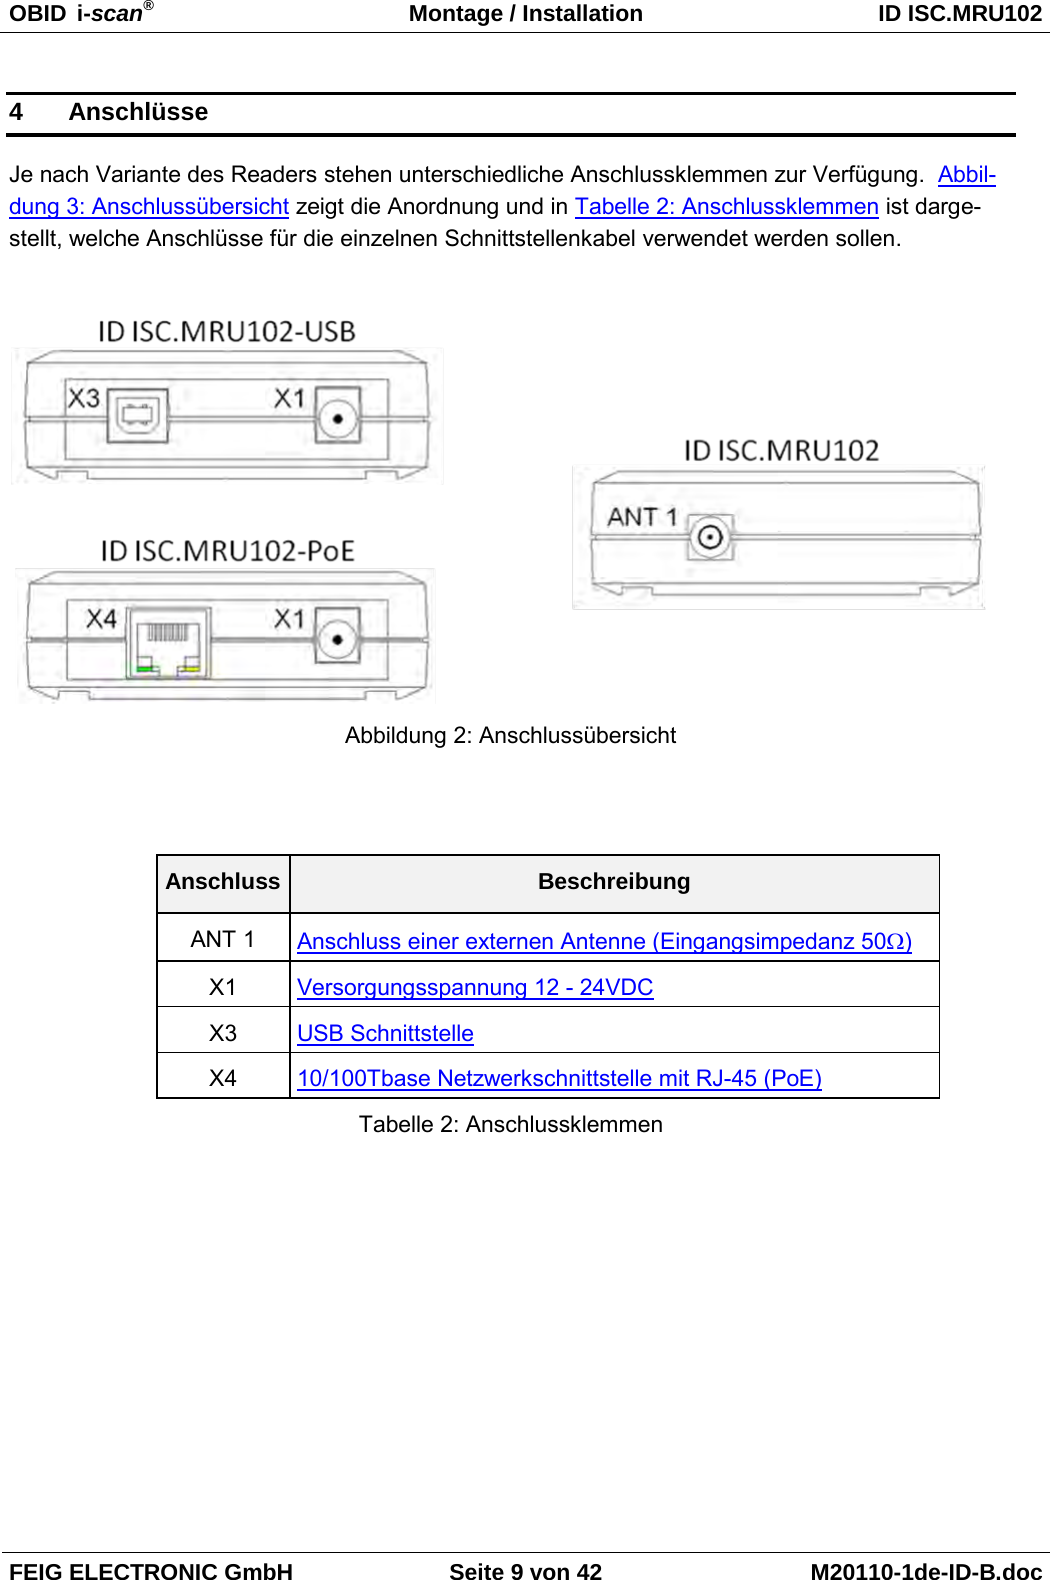 OBID  i-scan® Montage / Installation ID ISC.MRU102  FEIG ELECTRONIC GmbH Seite 9 von 42 M20110-1de-ID-B.doc  4  Anschlüsse Je nach Variante des Readers stehen unterschiedliche Anschlussklemmen zur Verfügung.  Abbil-dung 3: Anschlussübersicht zeigt die Anordnung und in Tabelle 2: Anschlussklemmen ist darge-stellt, welche Anschlüsse für die einzelnen Schnittstellenkabel verwendet werden sollen.    Abbildung 2: Anschlussübersicht   Anschluss Beschreibung ANT 1 Anschluss einer externen Antenne (Eingangsimpedanz 50Ω) X1 Versorgungsspannung 12 - 24VDC X3 USB Schnittstelle X4 10/100Tbase Netzwerkschnittstelle mit RJ-45 (PoE) Tabelle 2: Anschlussklemmen 